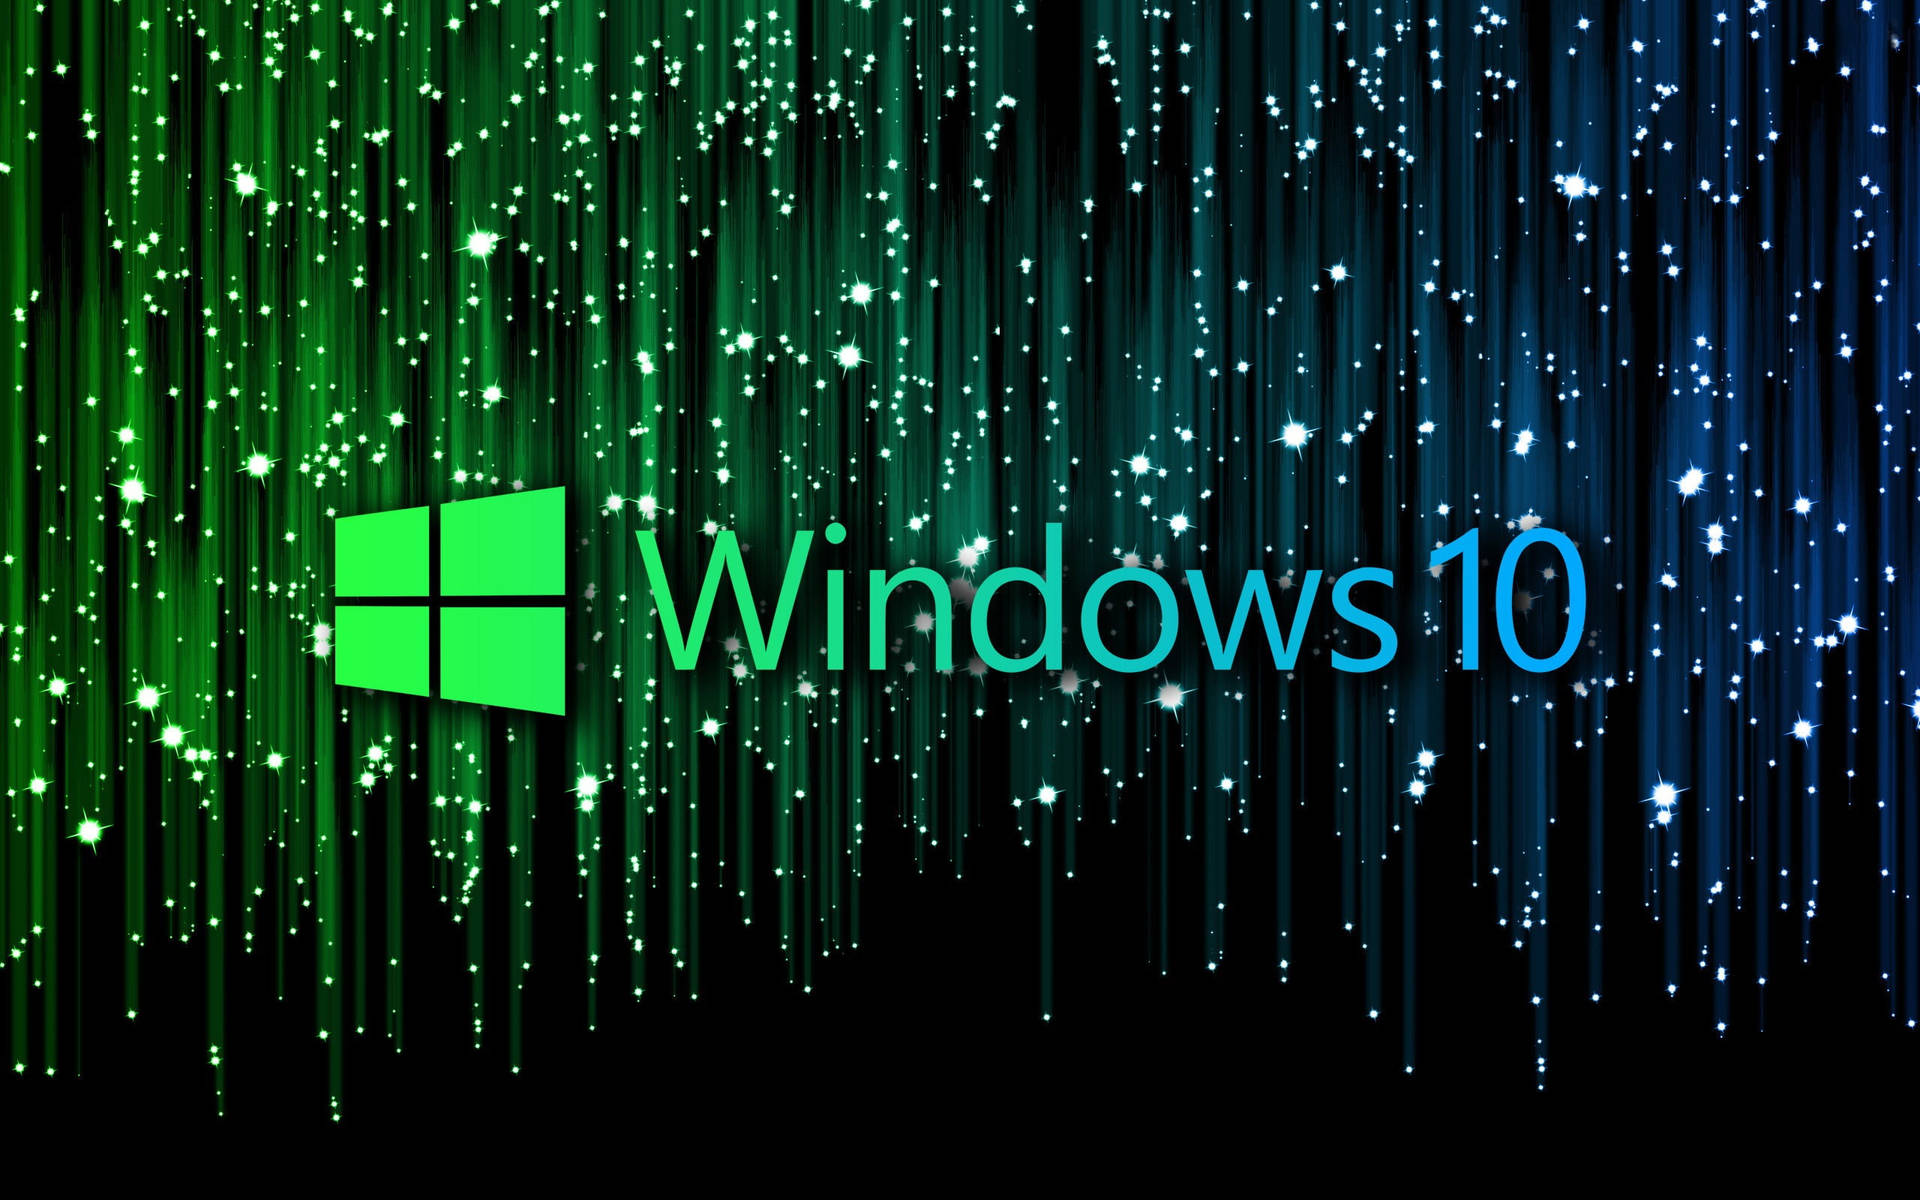 Sparkly Windows 10 Theme Wallpaper